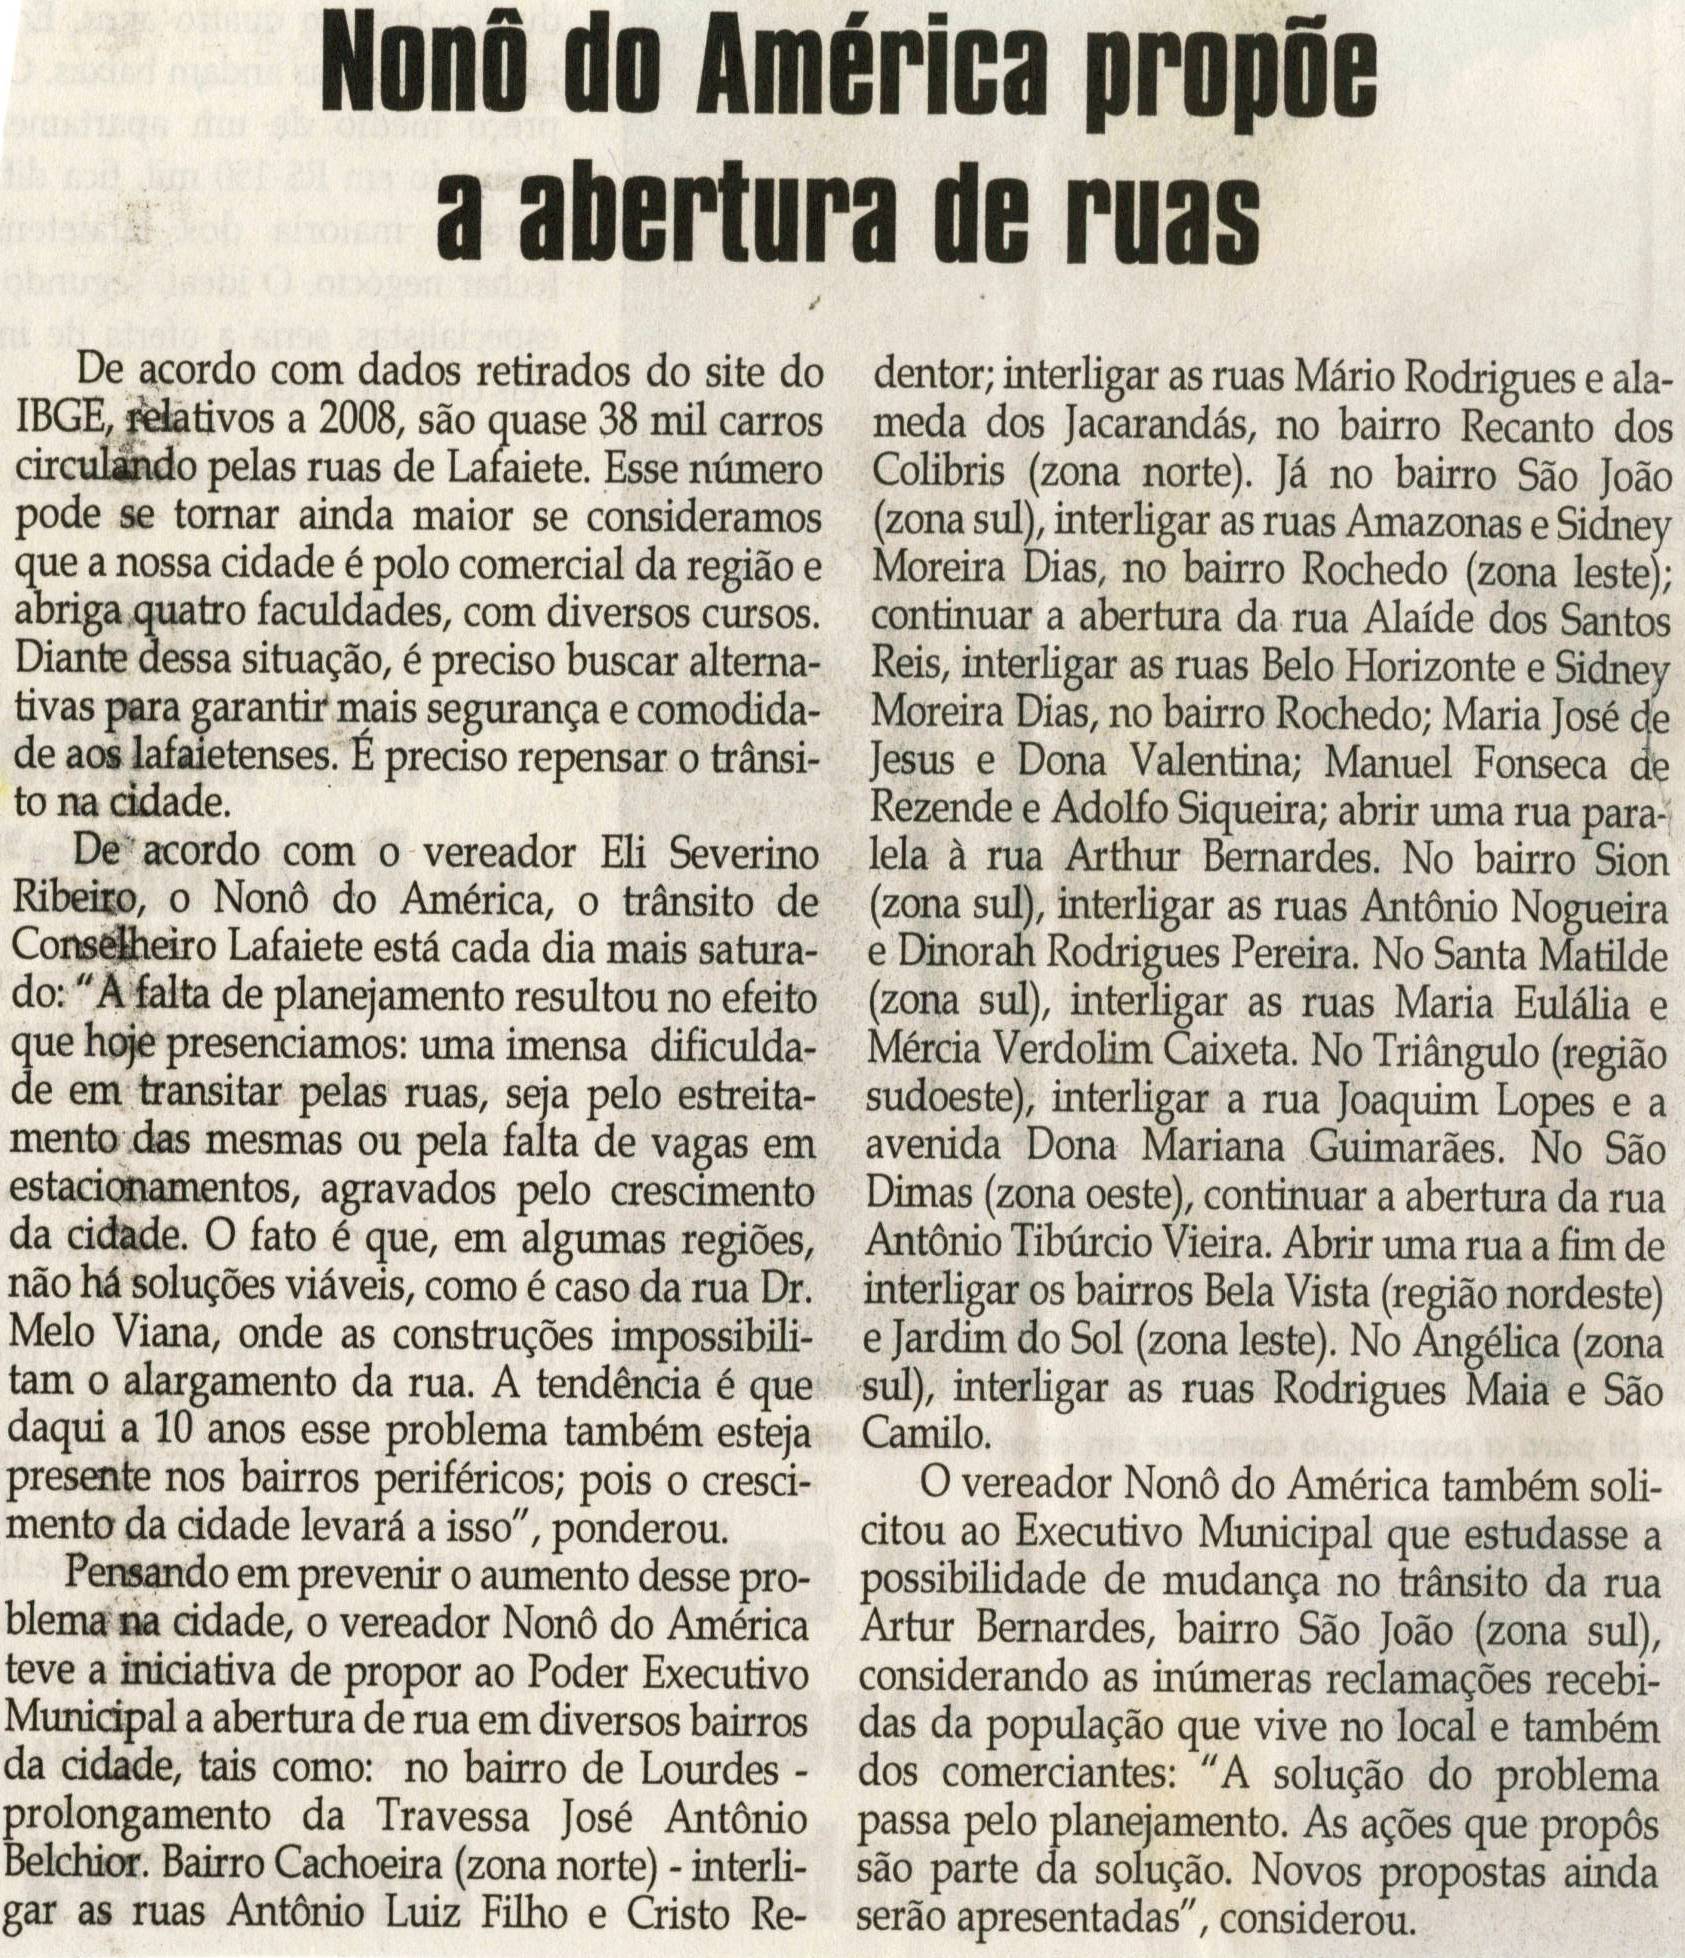 Nonô do América propõe abertura de ruas. Jornal Correio da Cidade, Conselheiro Lafaiete, 01 mai. 2010, p. 2.